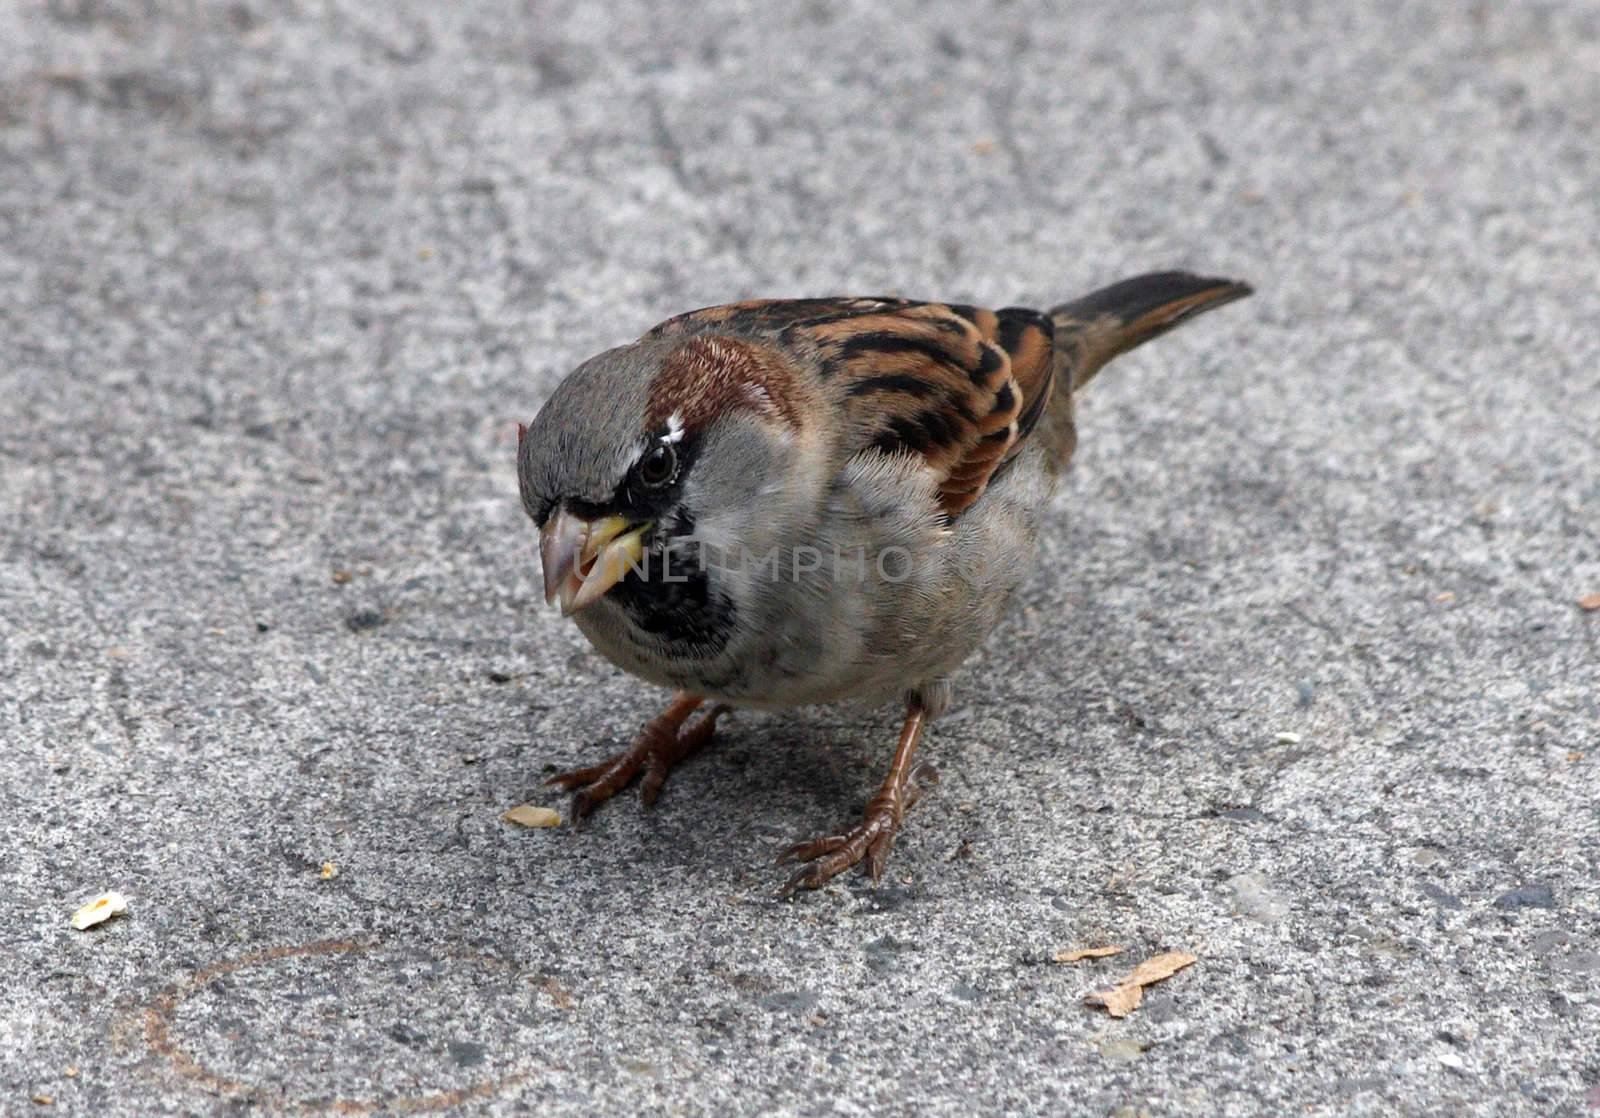 House Sparrow.  Photo taken at Oregon Zoo, Portland.